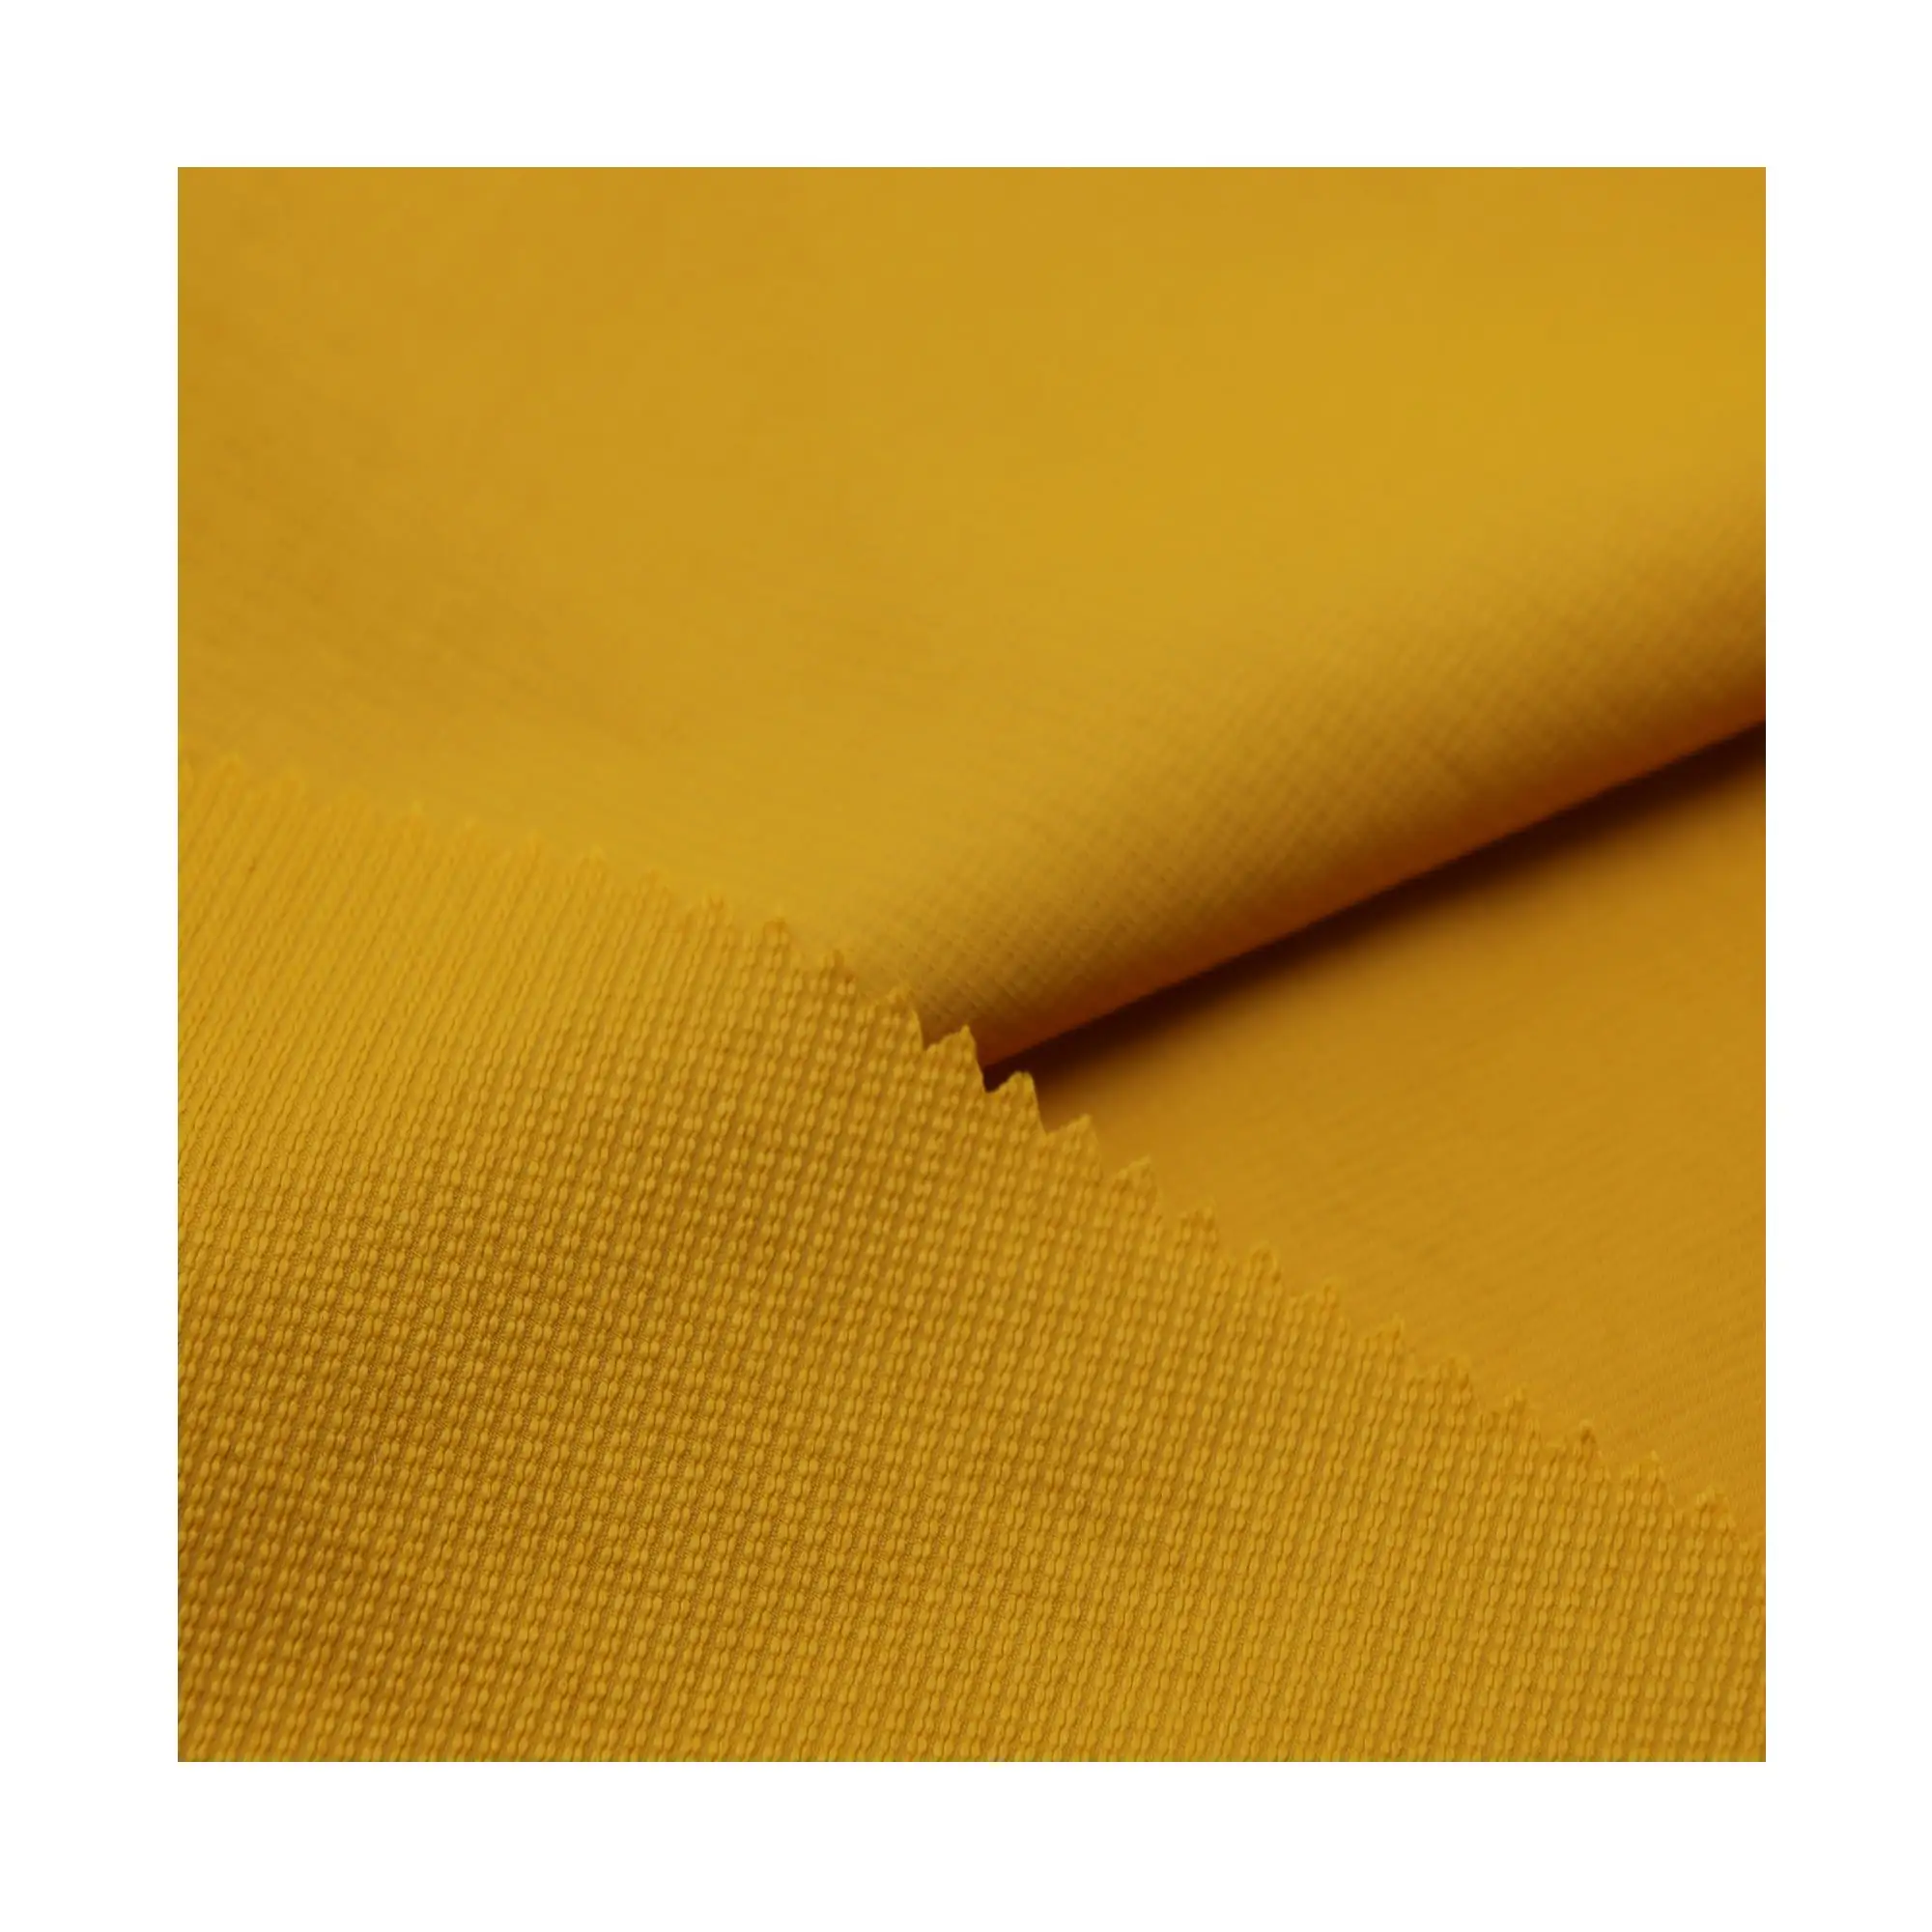 Tissu extensible à 4 voies en nylon jacquard imperméable pour pantalons, vestes, vêtements d'hiver